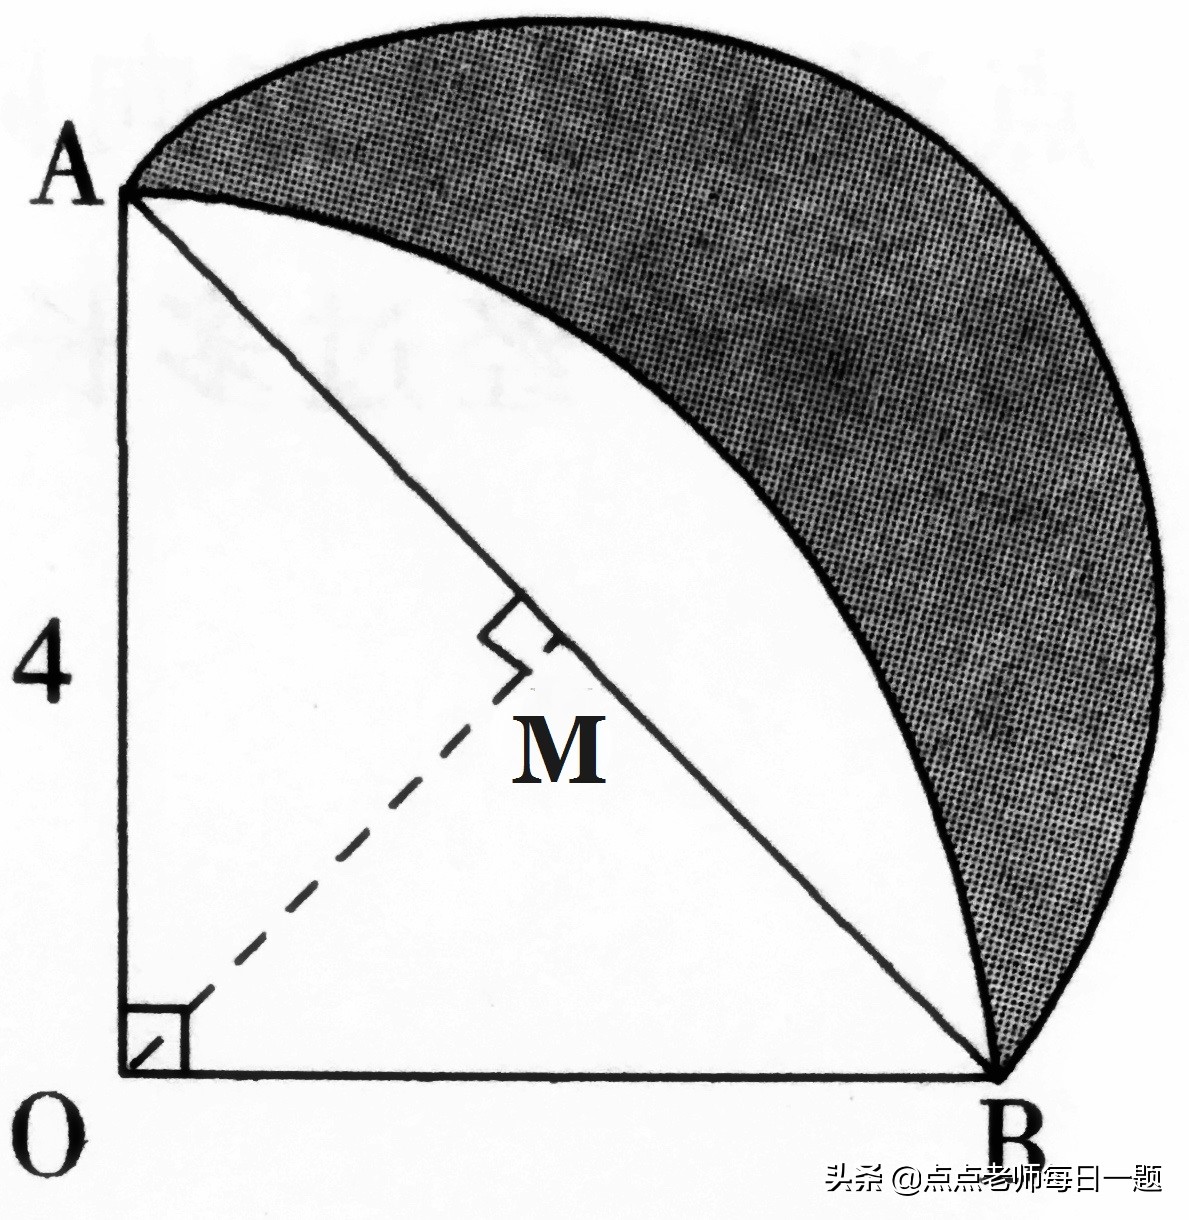 扇形面积公式 扇形面积公式 圆和扇形是小升初特别喜欢考的内容